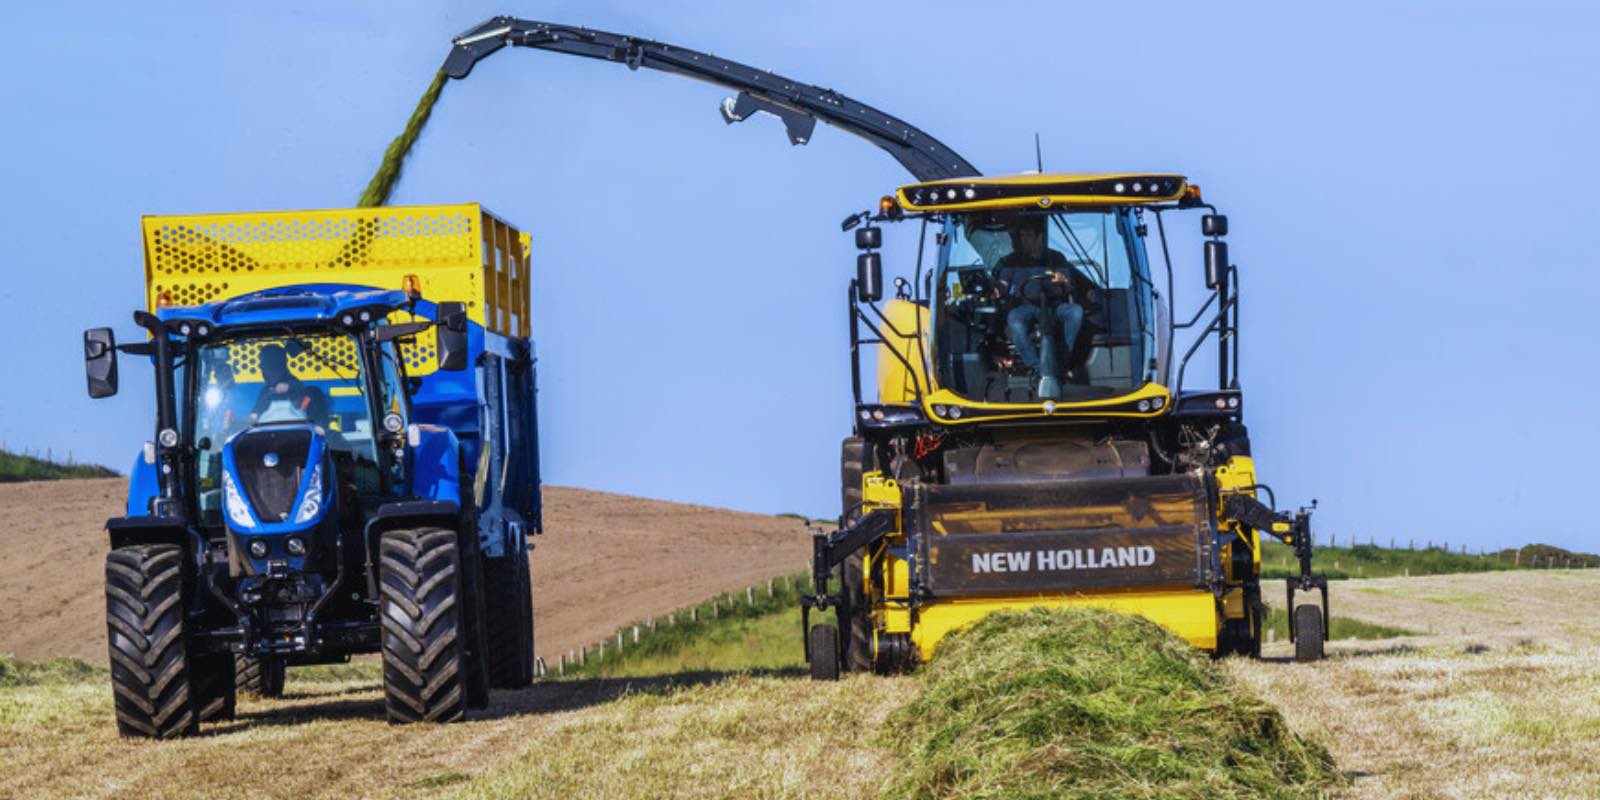 Ubezpieczenie kombajnu i traktora rolniczego - jak zgłosić i rozliczyć szkodę?